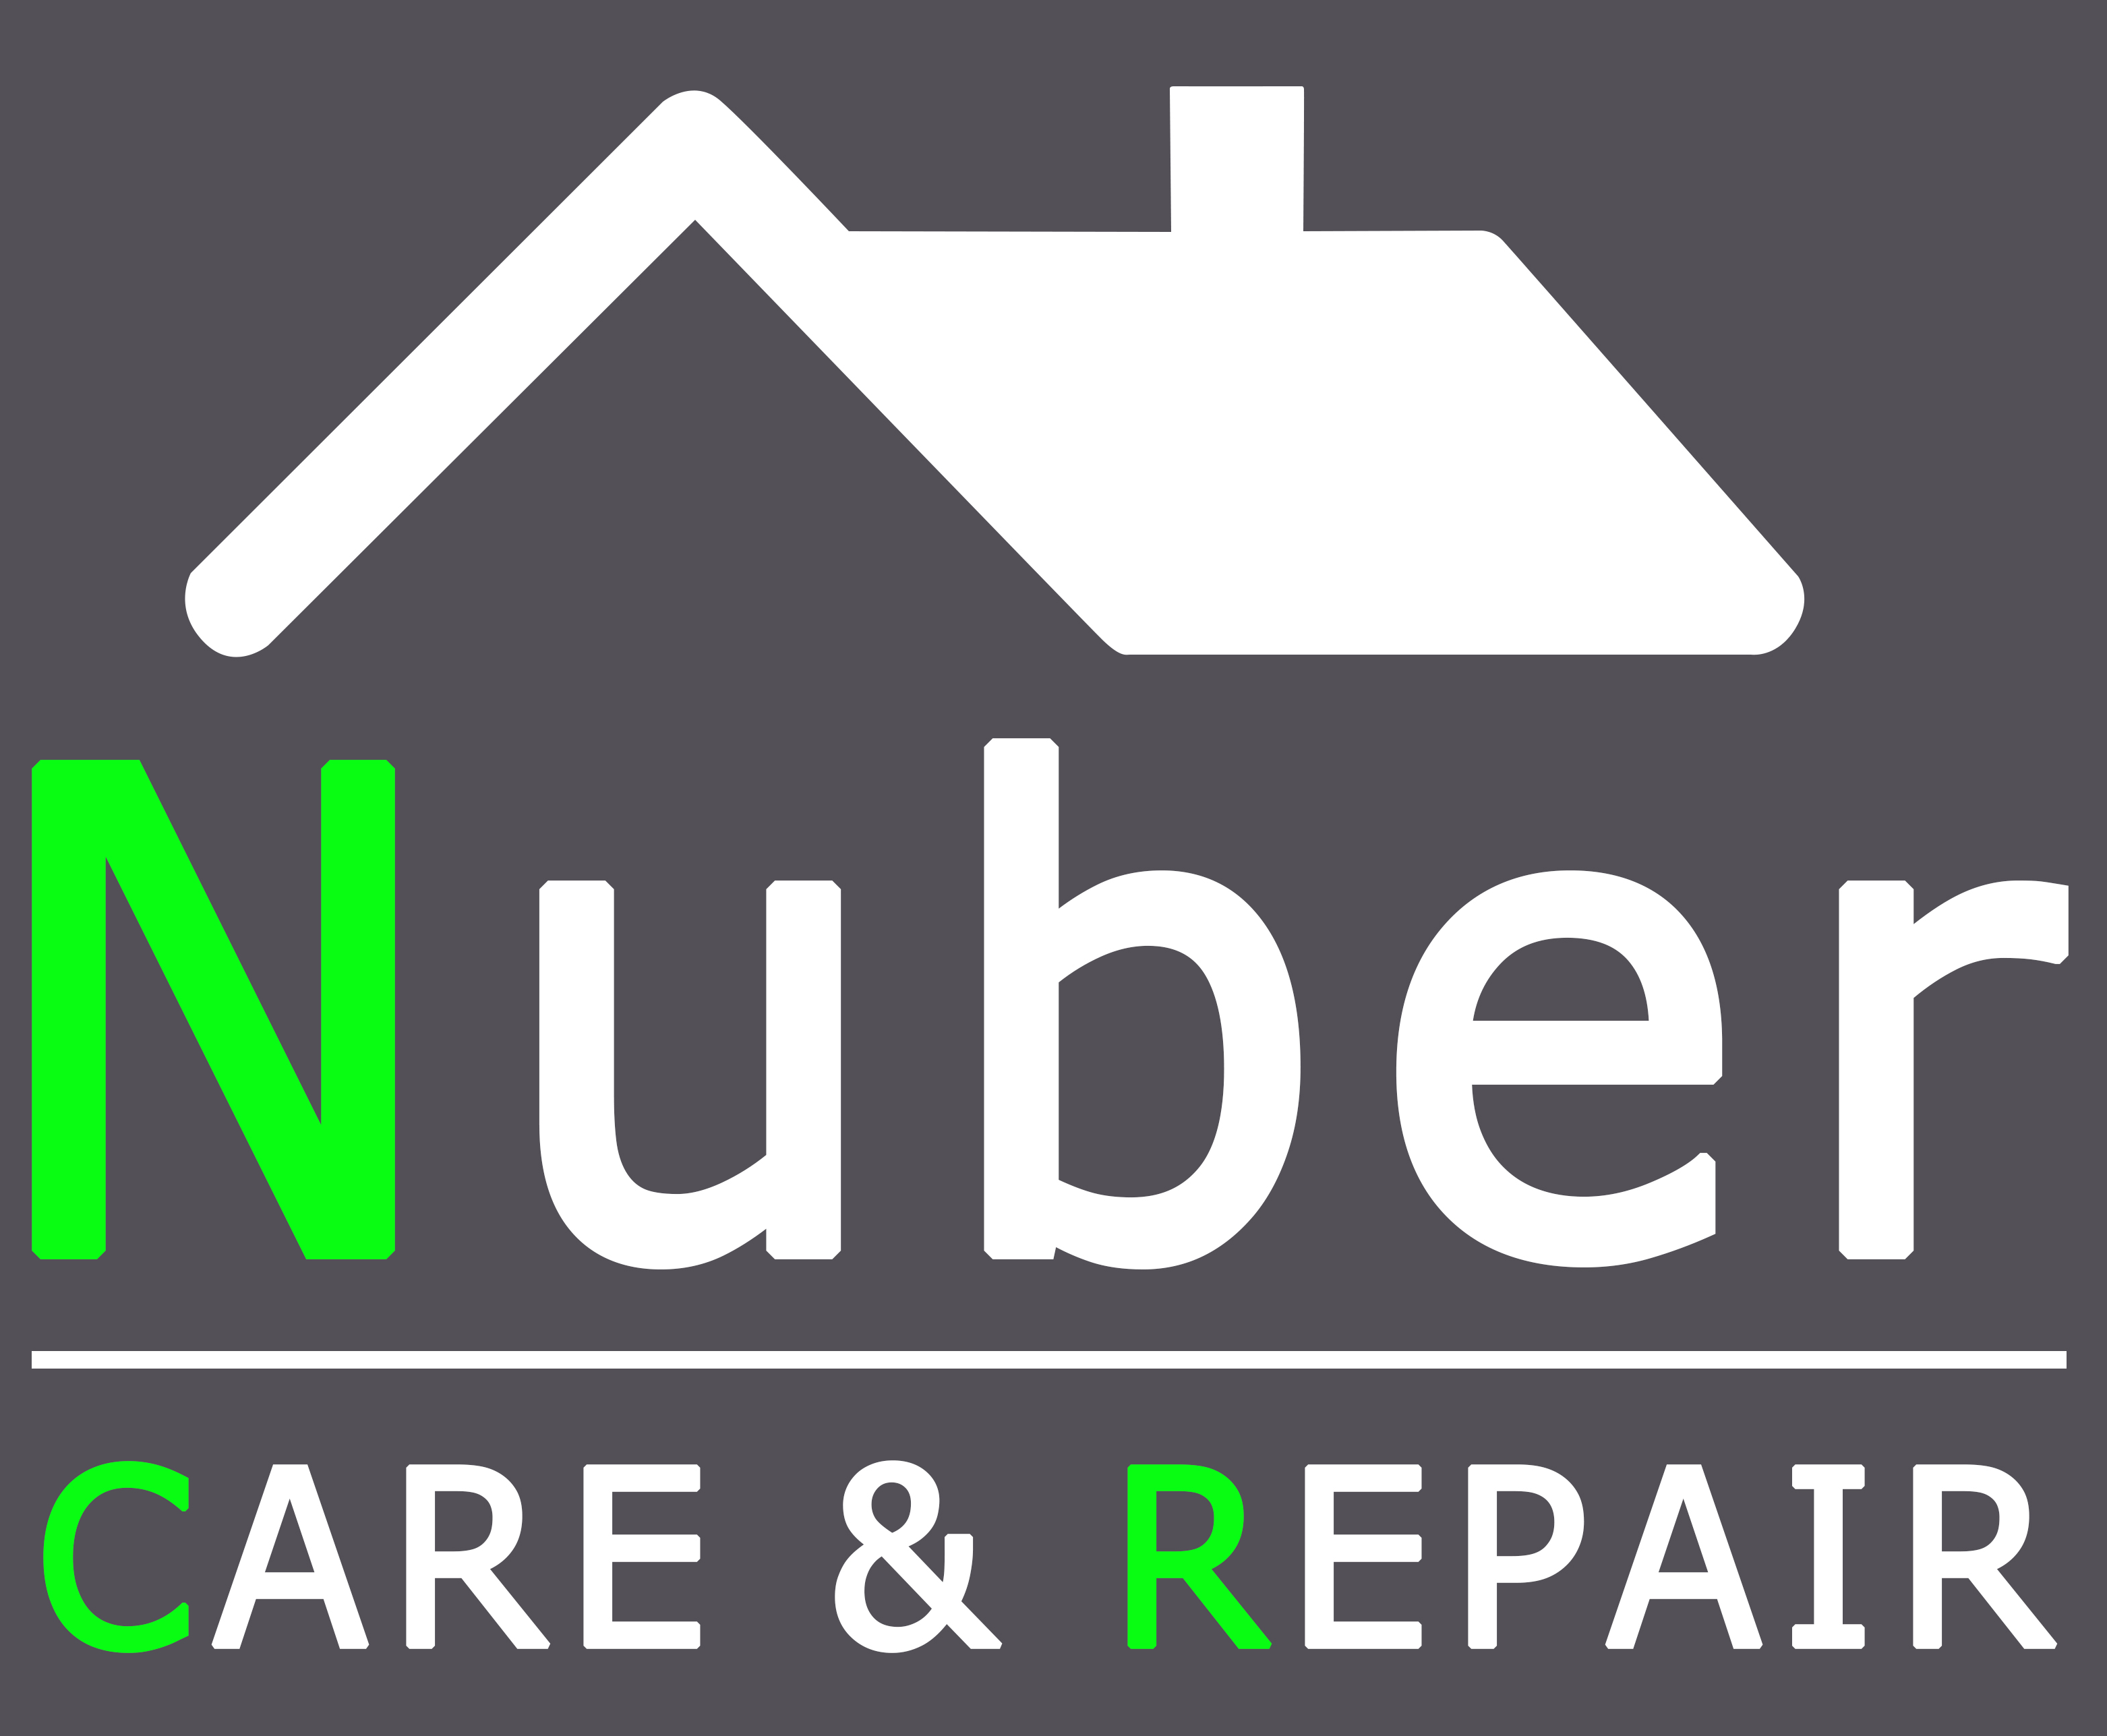 Care & Repair Nuber